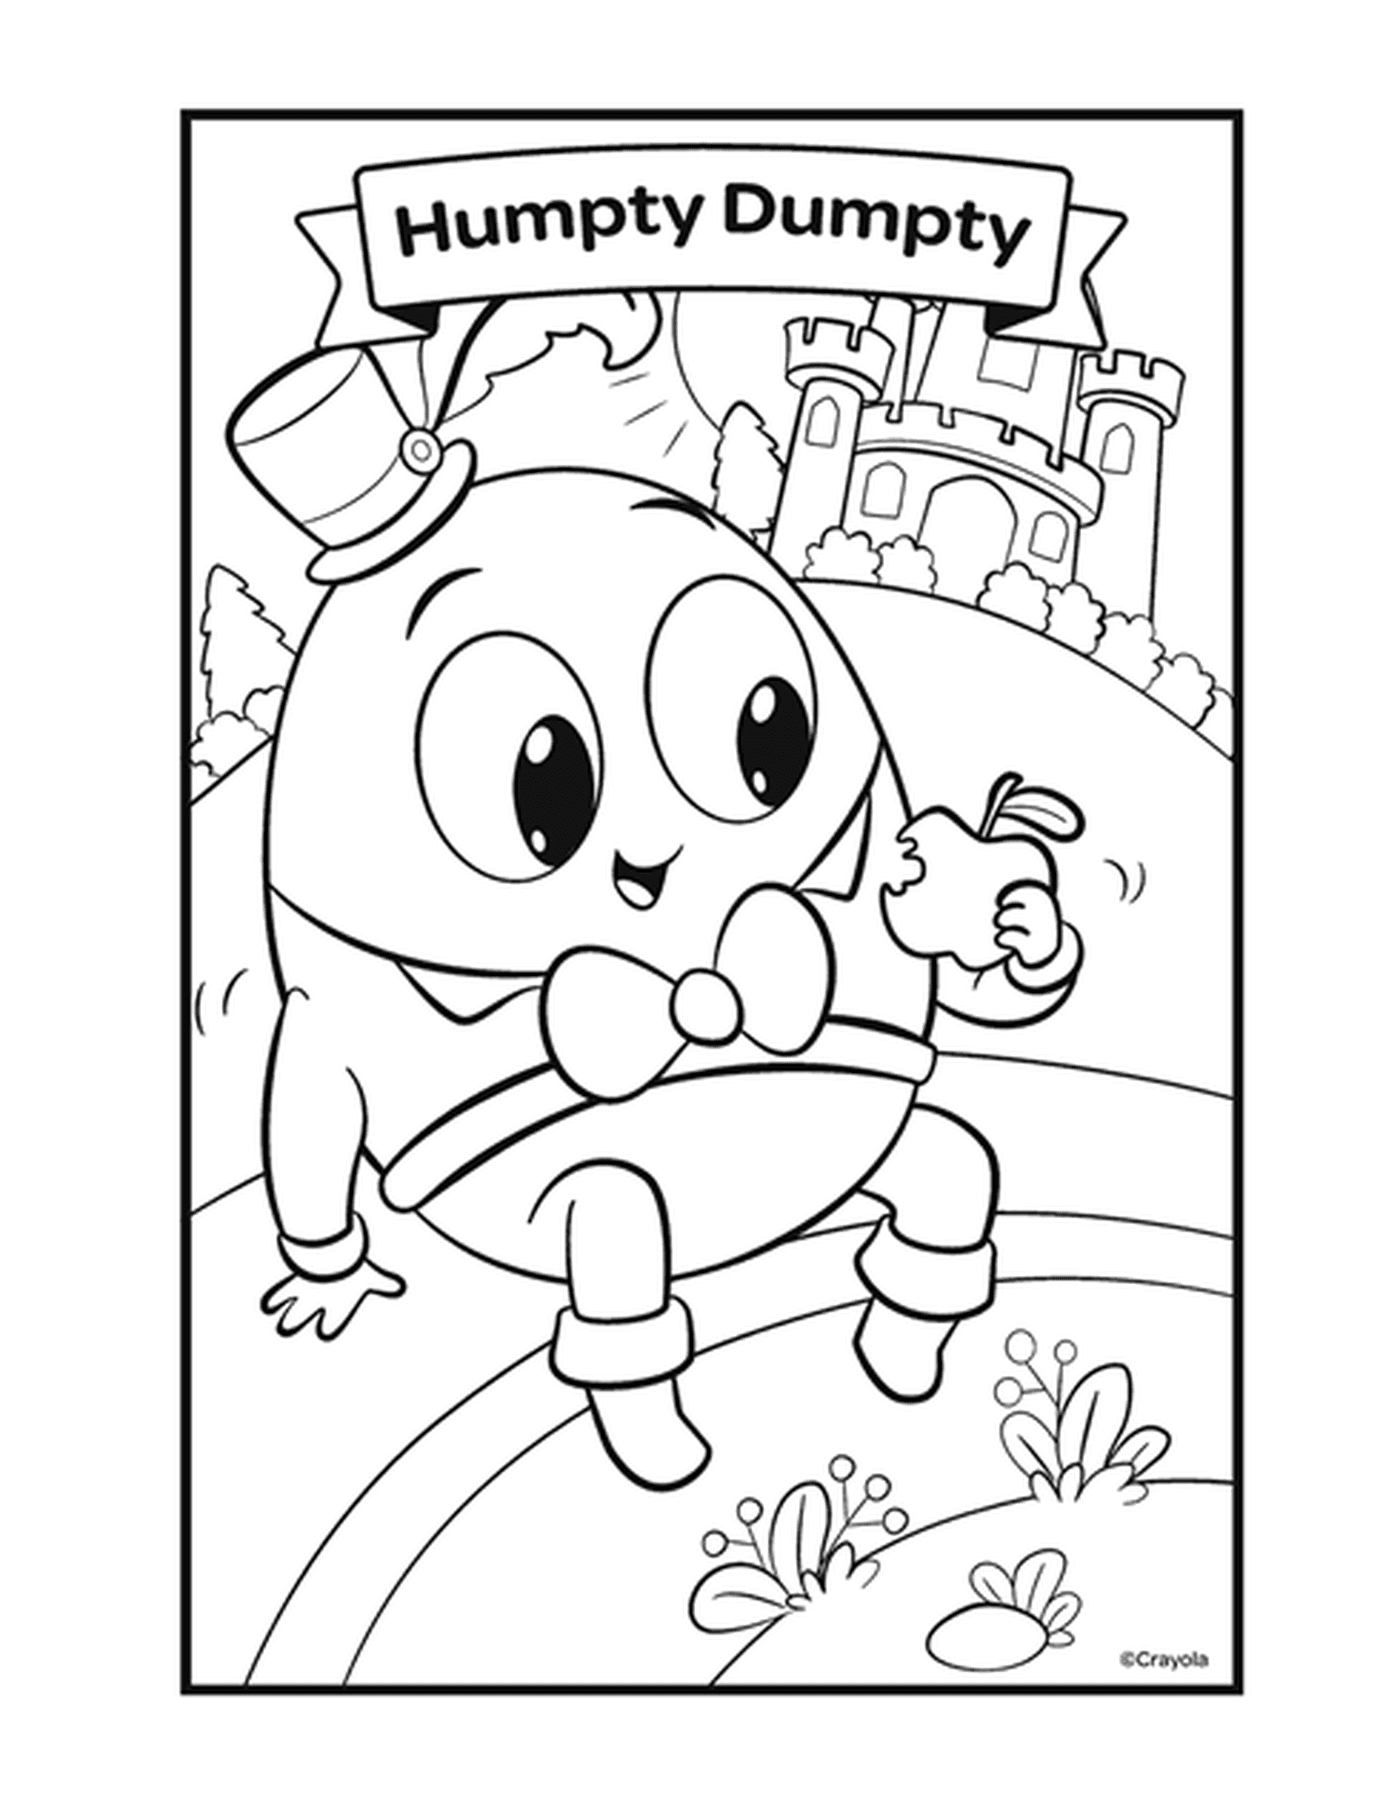  A figura Humpty Dumpty com um personagem em forma de ovo 